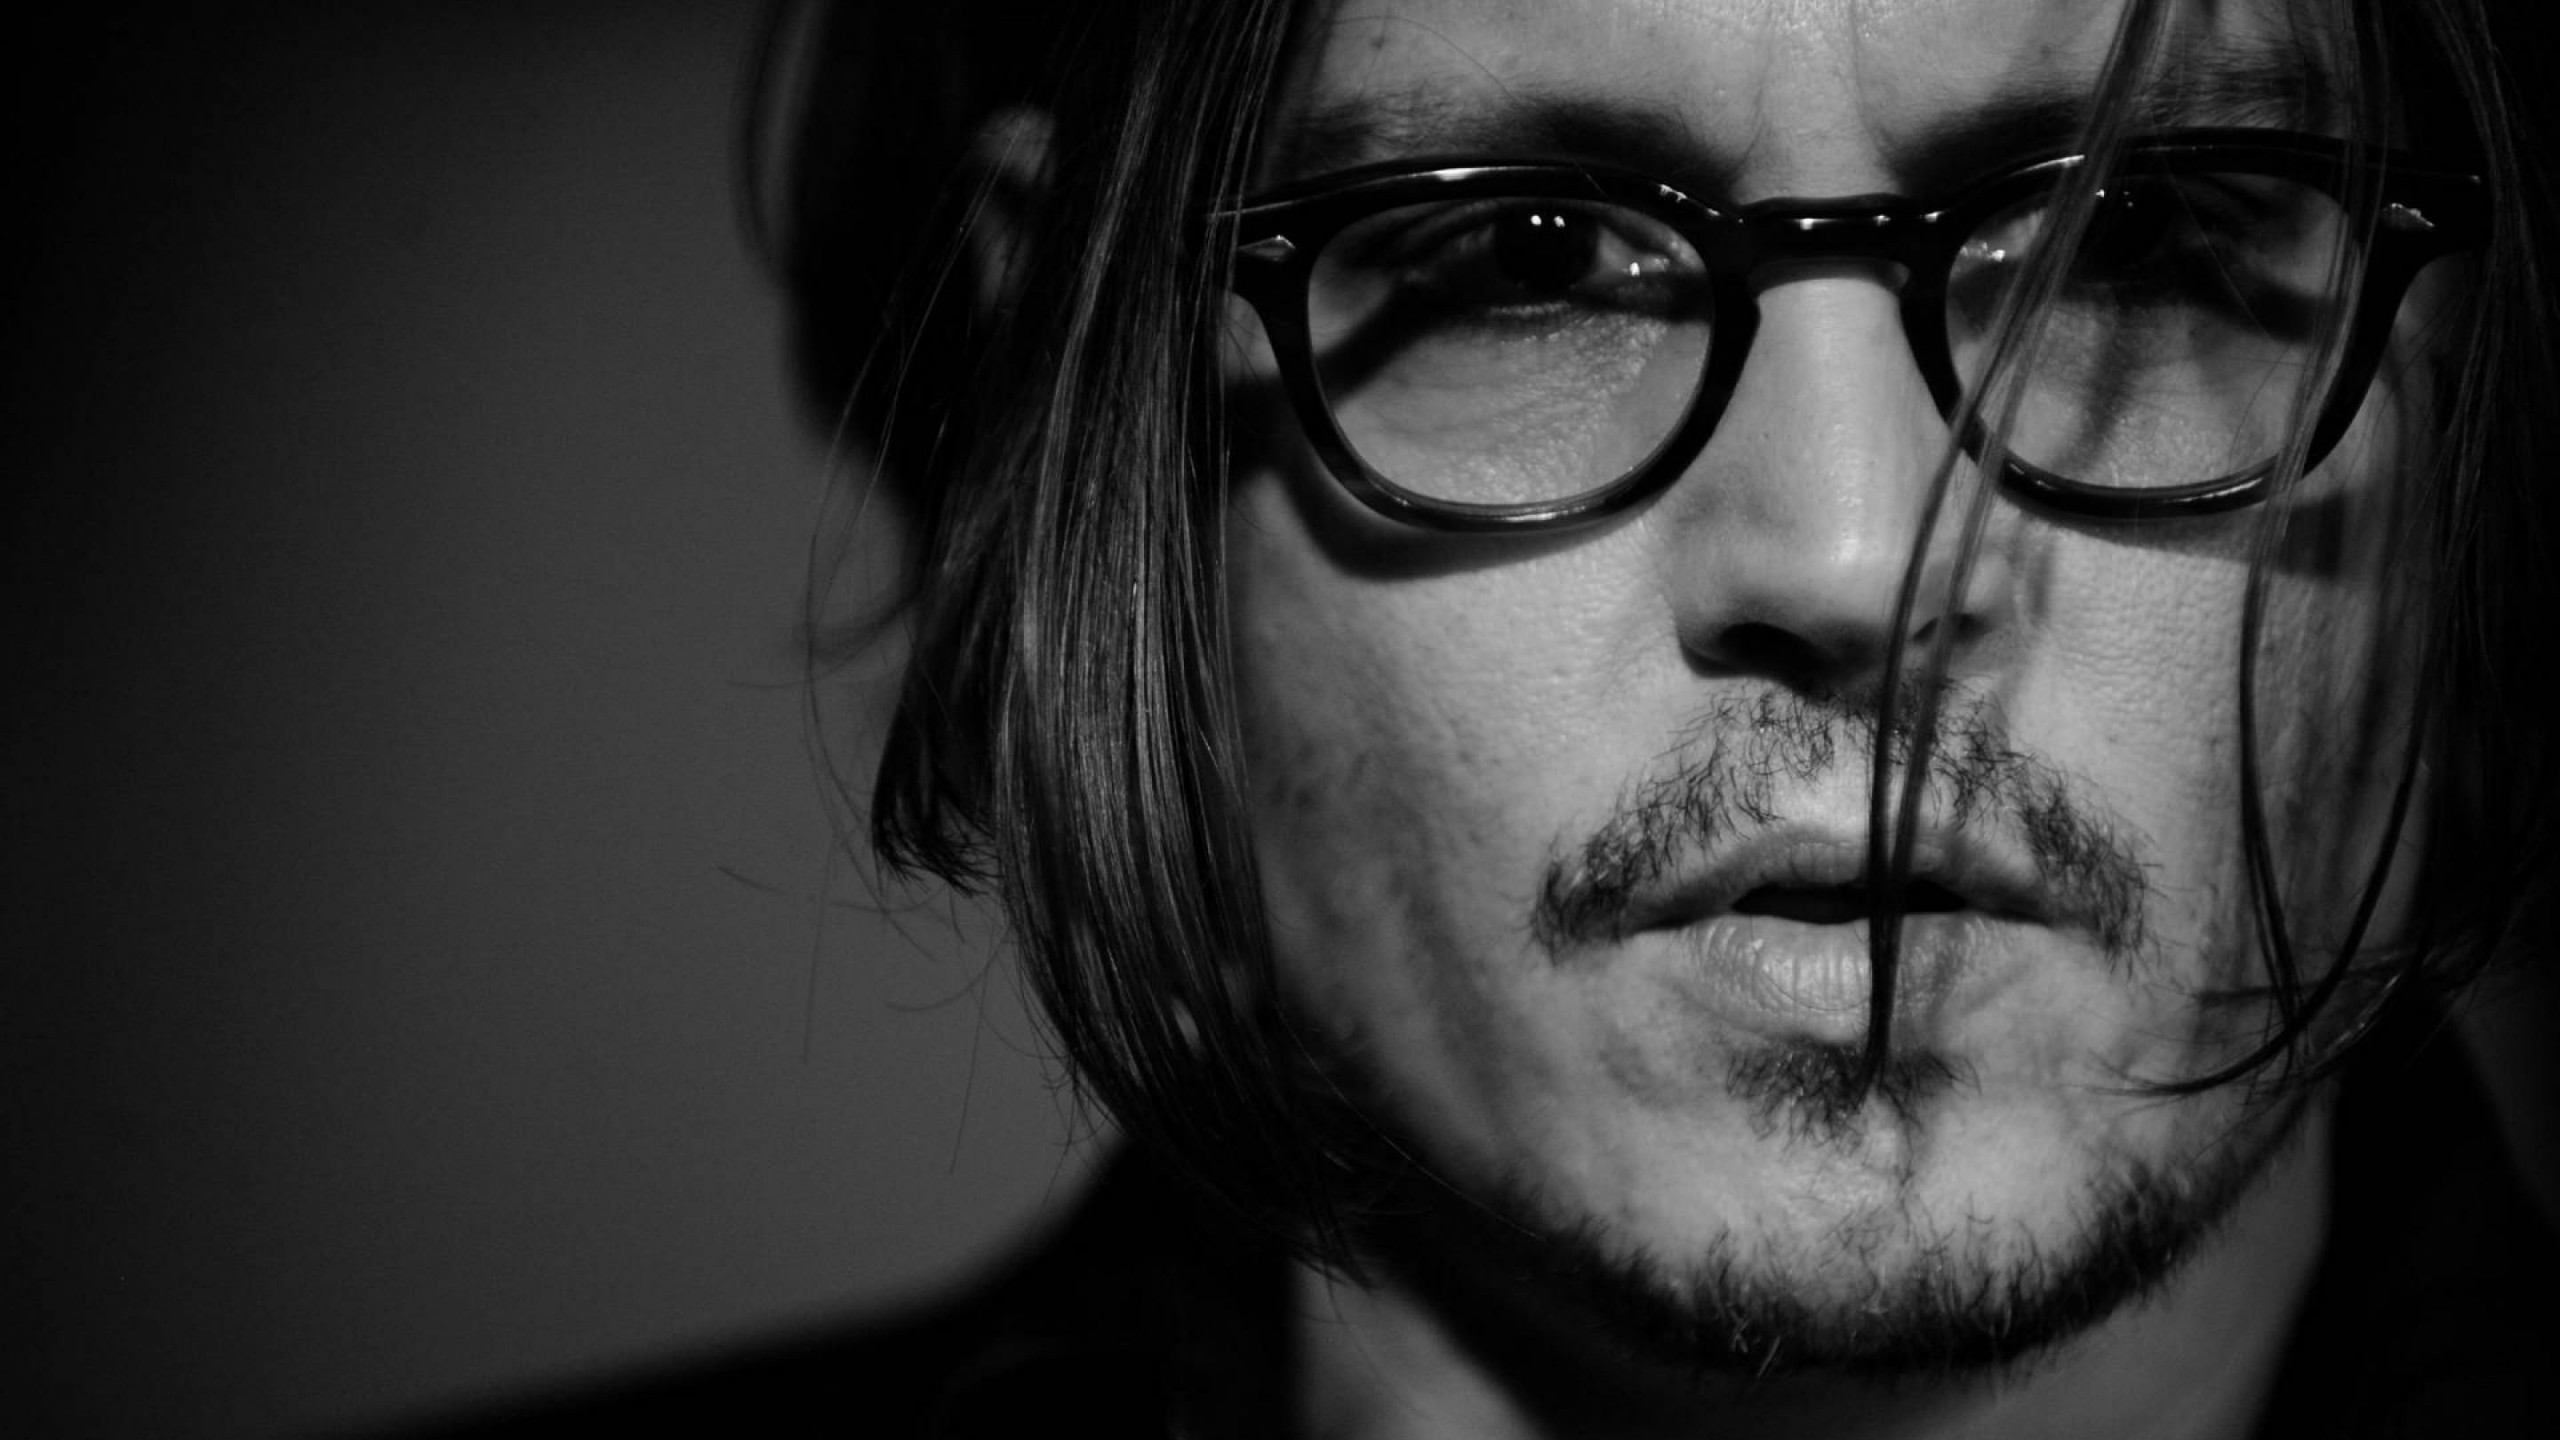 Johnny Depp Black & White Portrait Wallpaper for Desktop 2560x1440